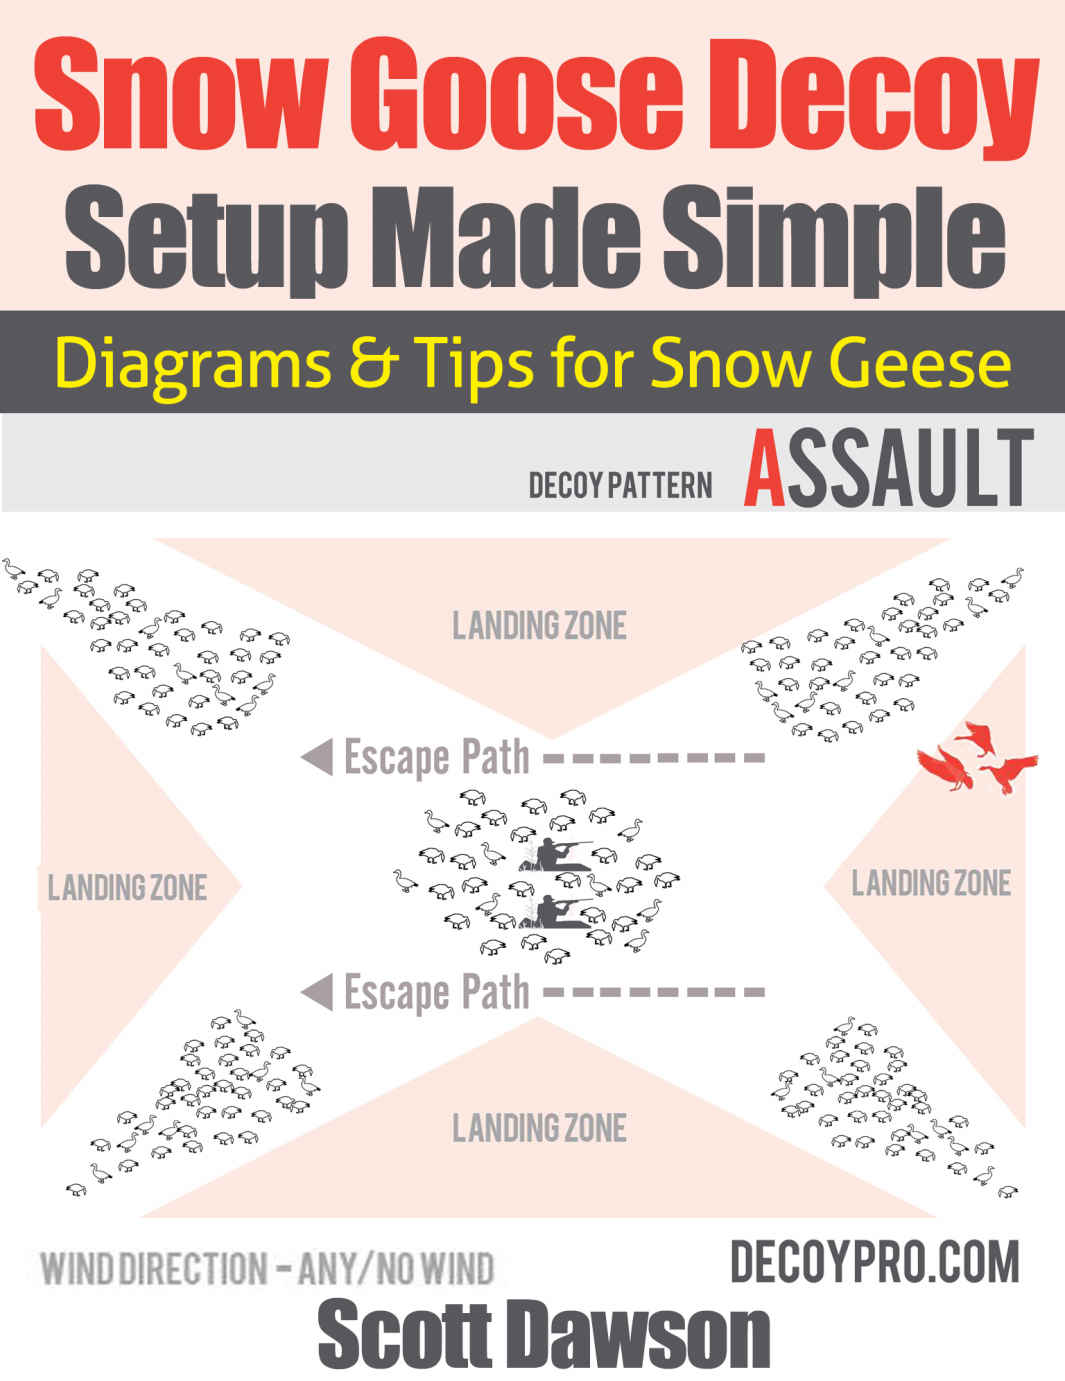 Snow Goose Decoy Setup Made Simple